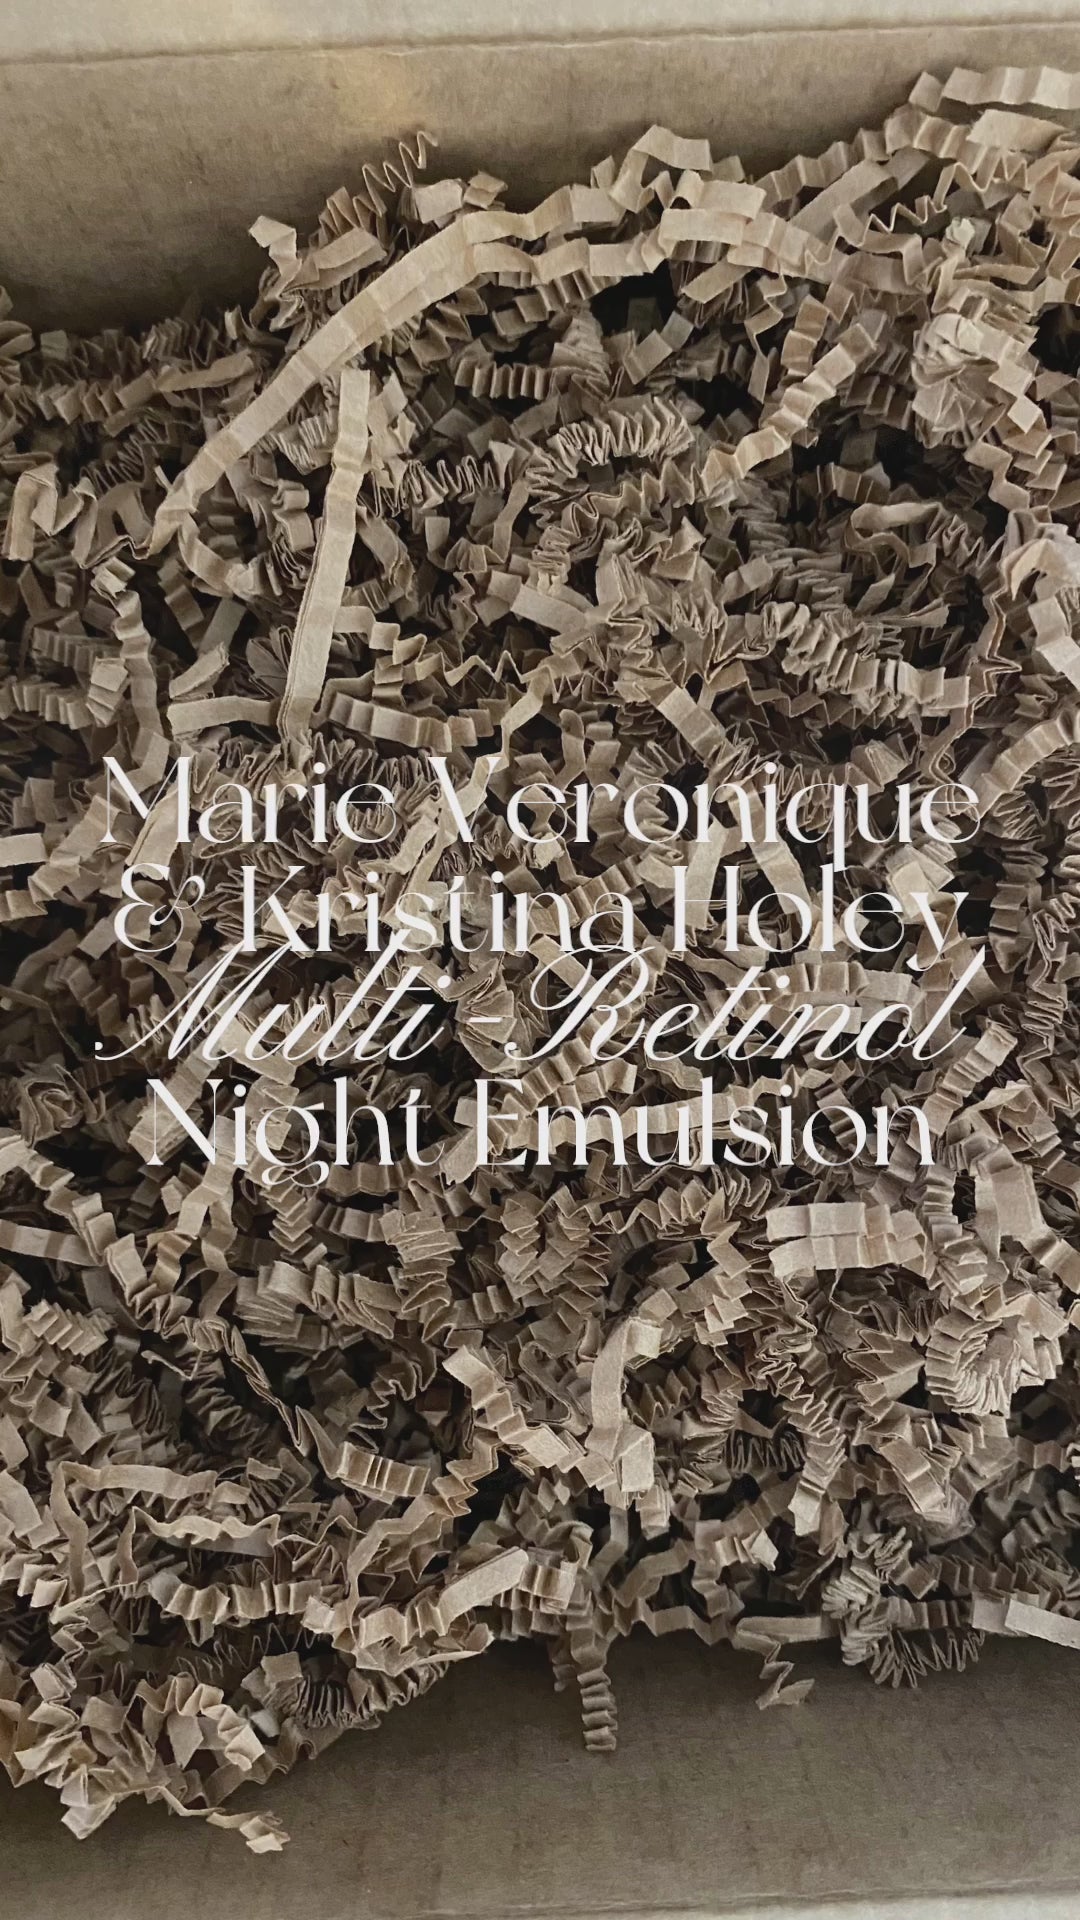 Multi-Retinol Night Emulsion - Marie Veronique